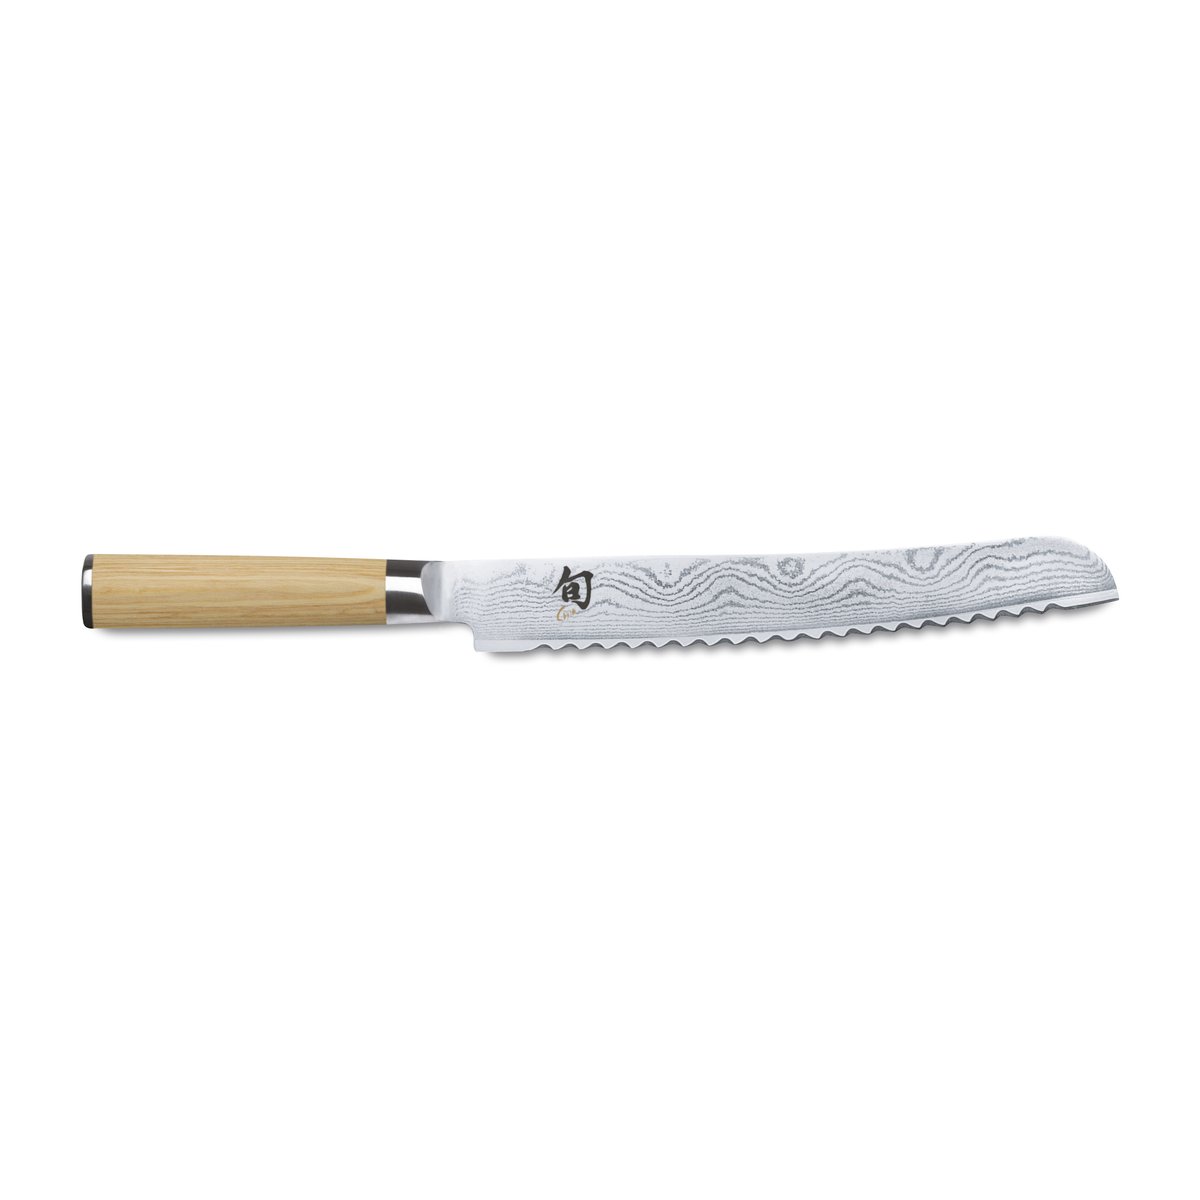 Kai Kai Shun Classic White brødkniv 23 cm